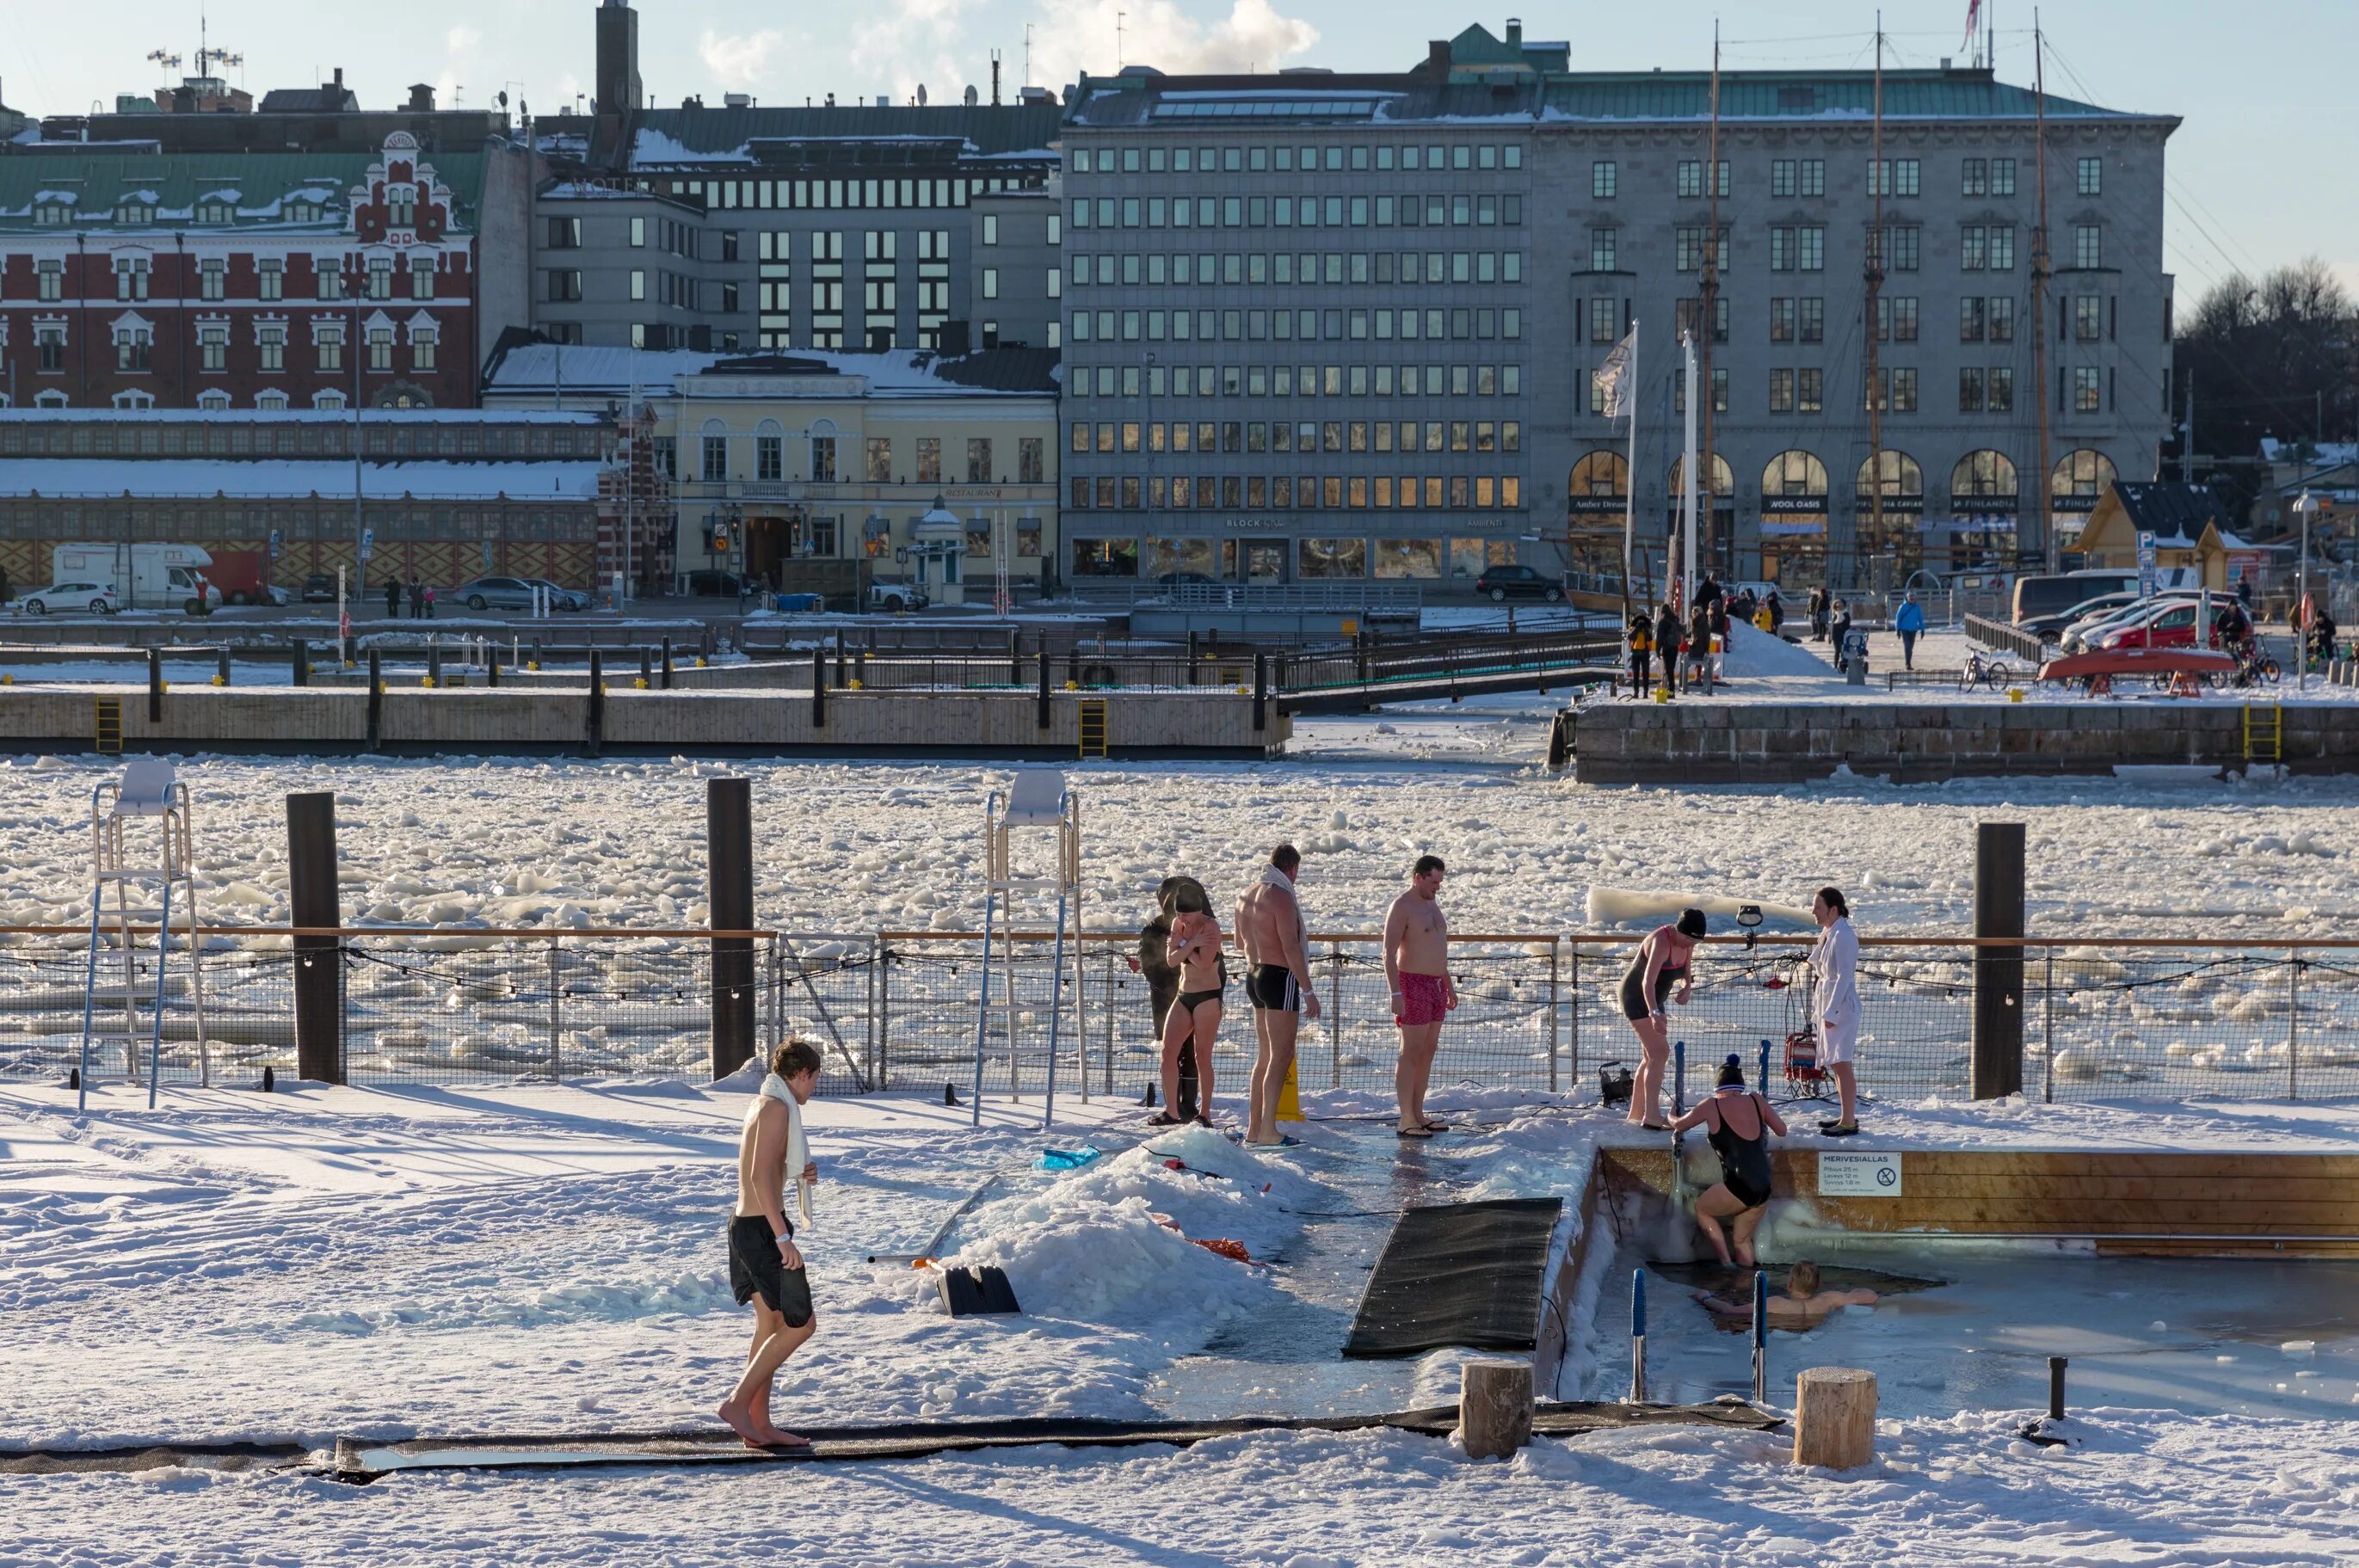 Хельсинки температура. Хельсинки бассейн зимой. Спортивно-культурная зона Хельсинки фото. Хельсинки объект созданный человек в воде. Хельсинки, Финляндия частные фото.